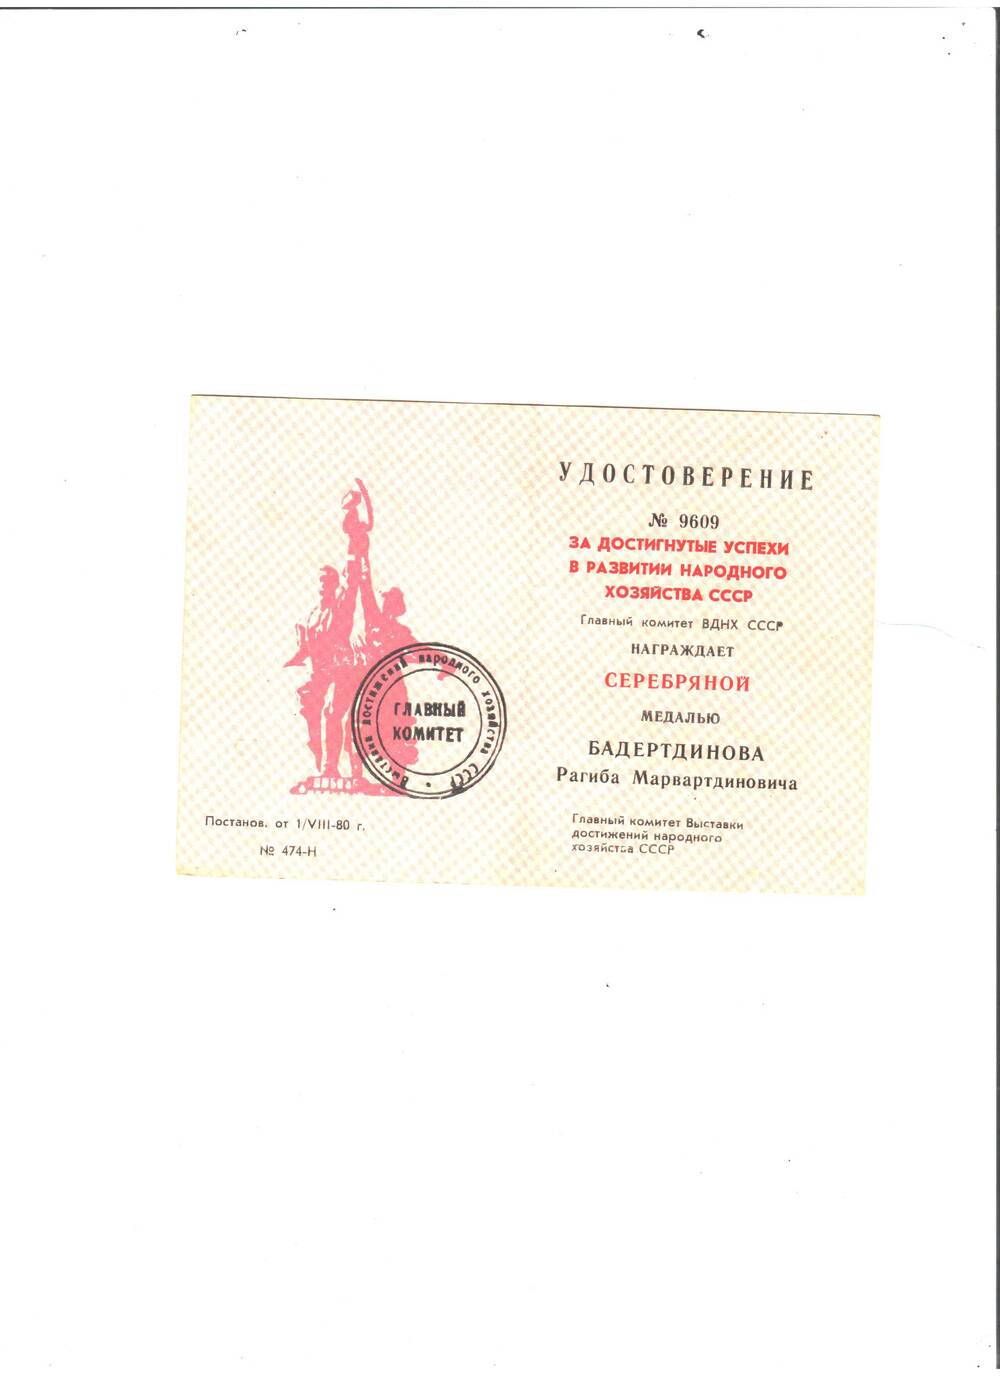 Удостоверение № 9609 за достигнутые успехи в развитии народного хоз-ва СССР на имя Бадертдинова Р.М.  о награждении серебрянной медалью (обложка желтого цвета)